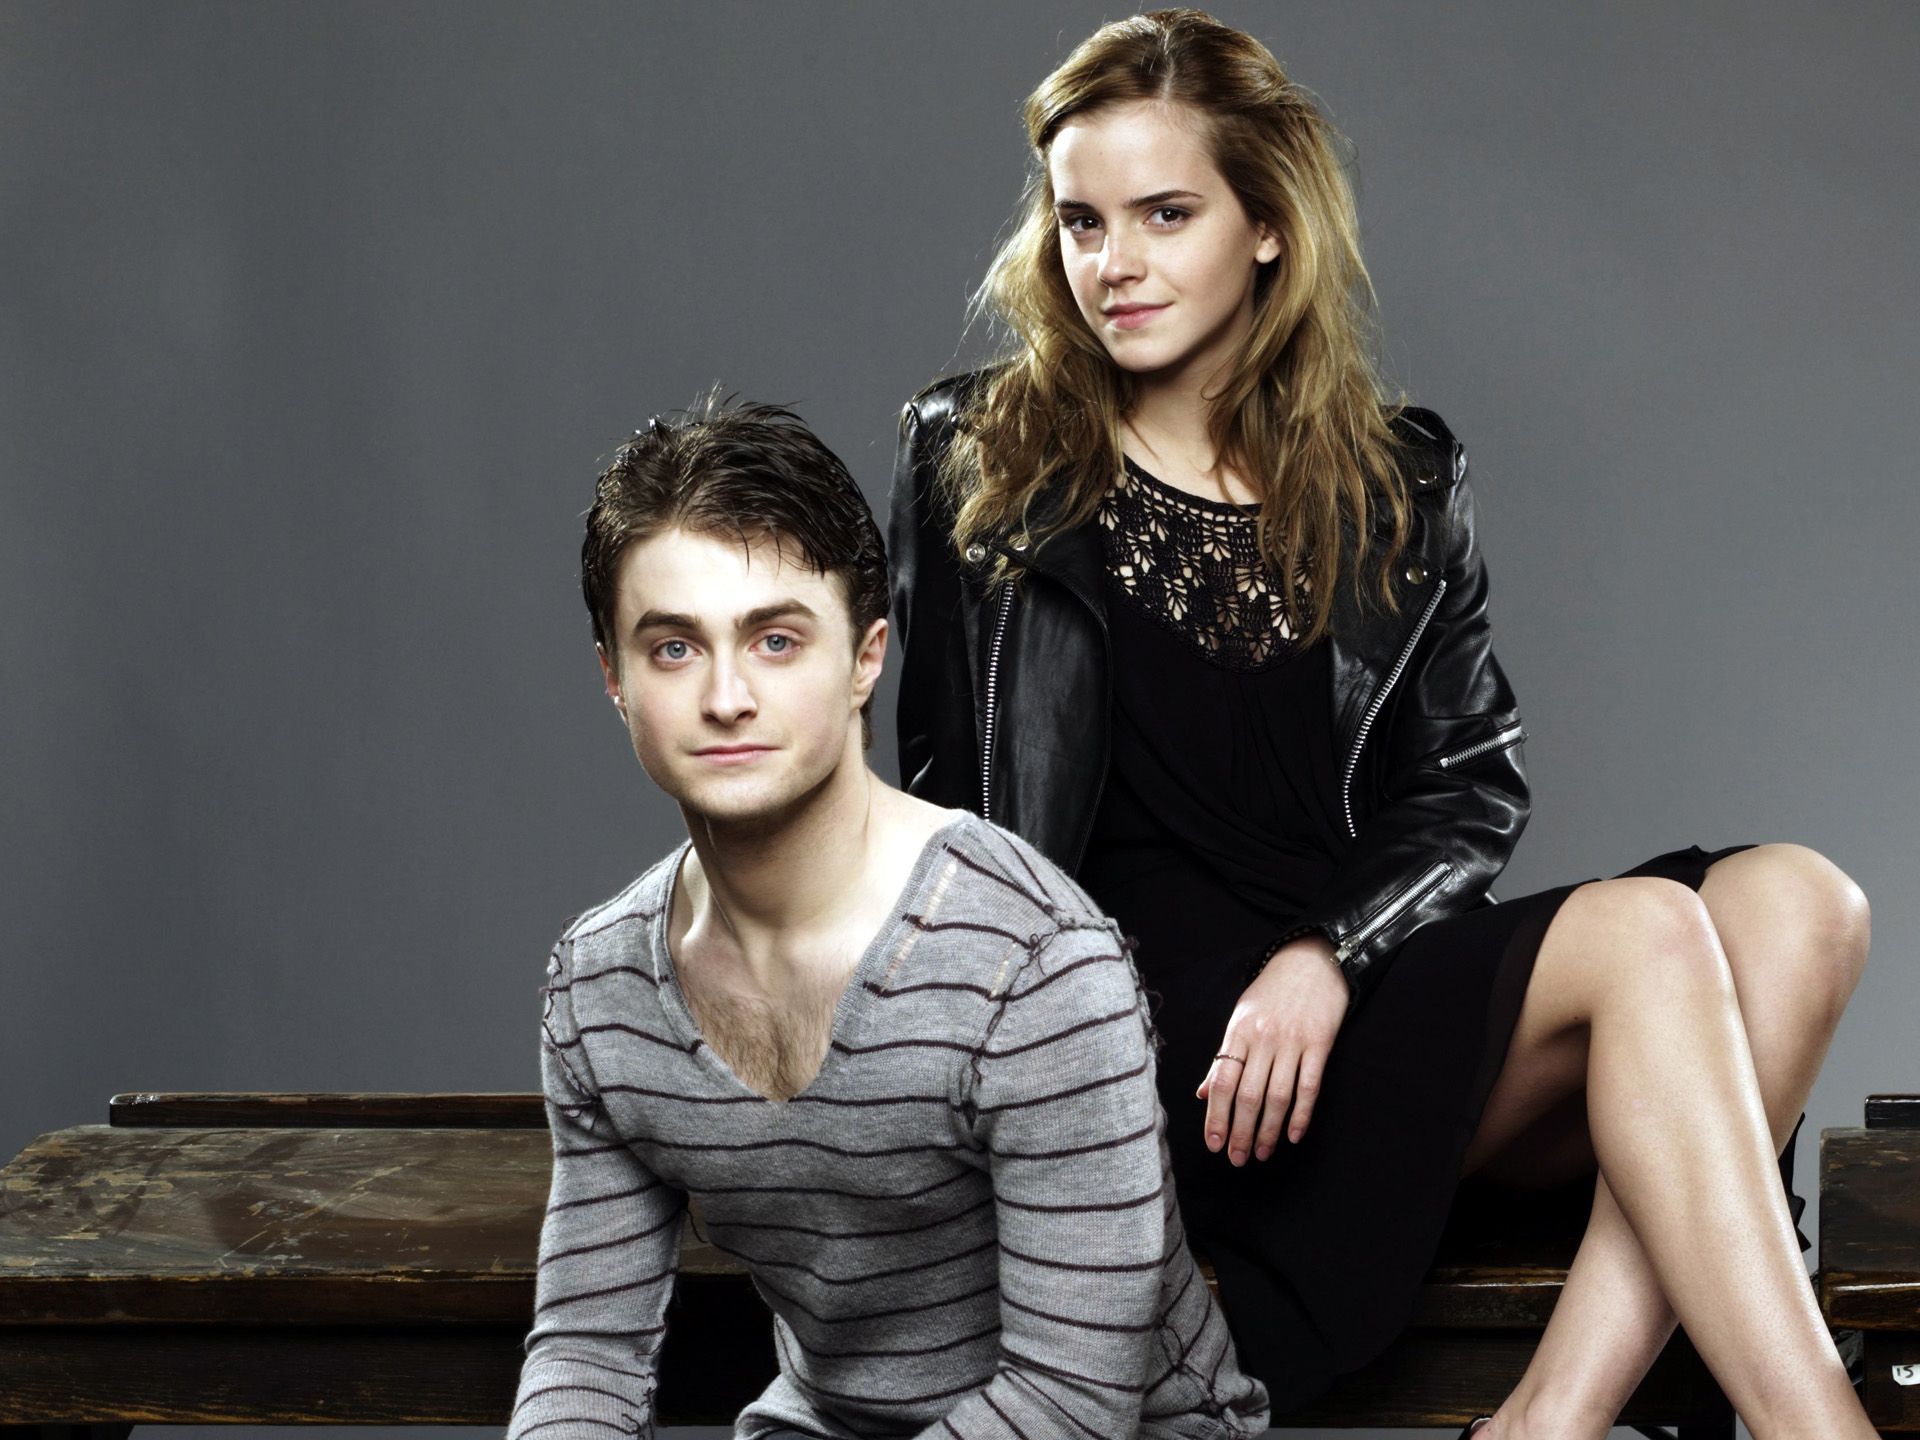 Daniel Radcliffe&Emma Watson Wallpaper: Emma Watson with Daniel Radcliffe. Daniel radcliffe, Emma watson wallpaper, Emma watson